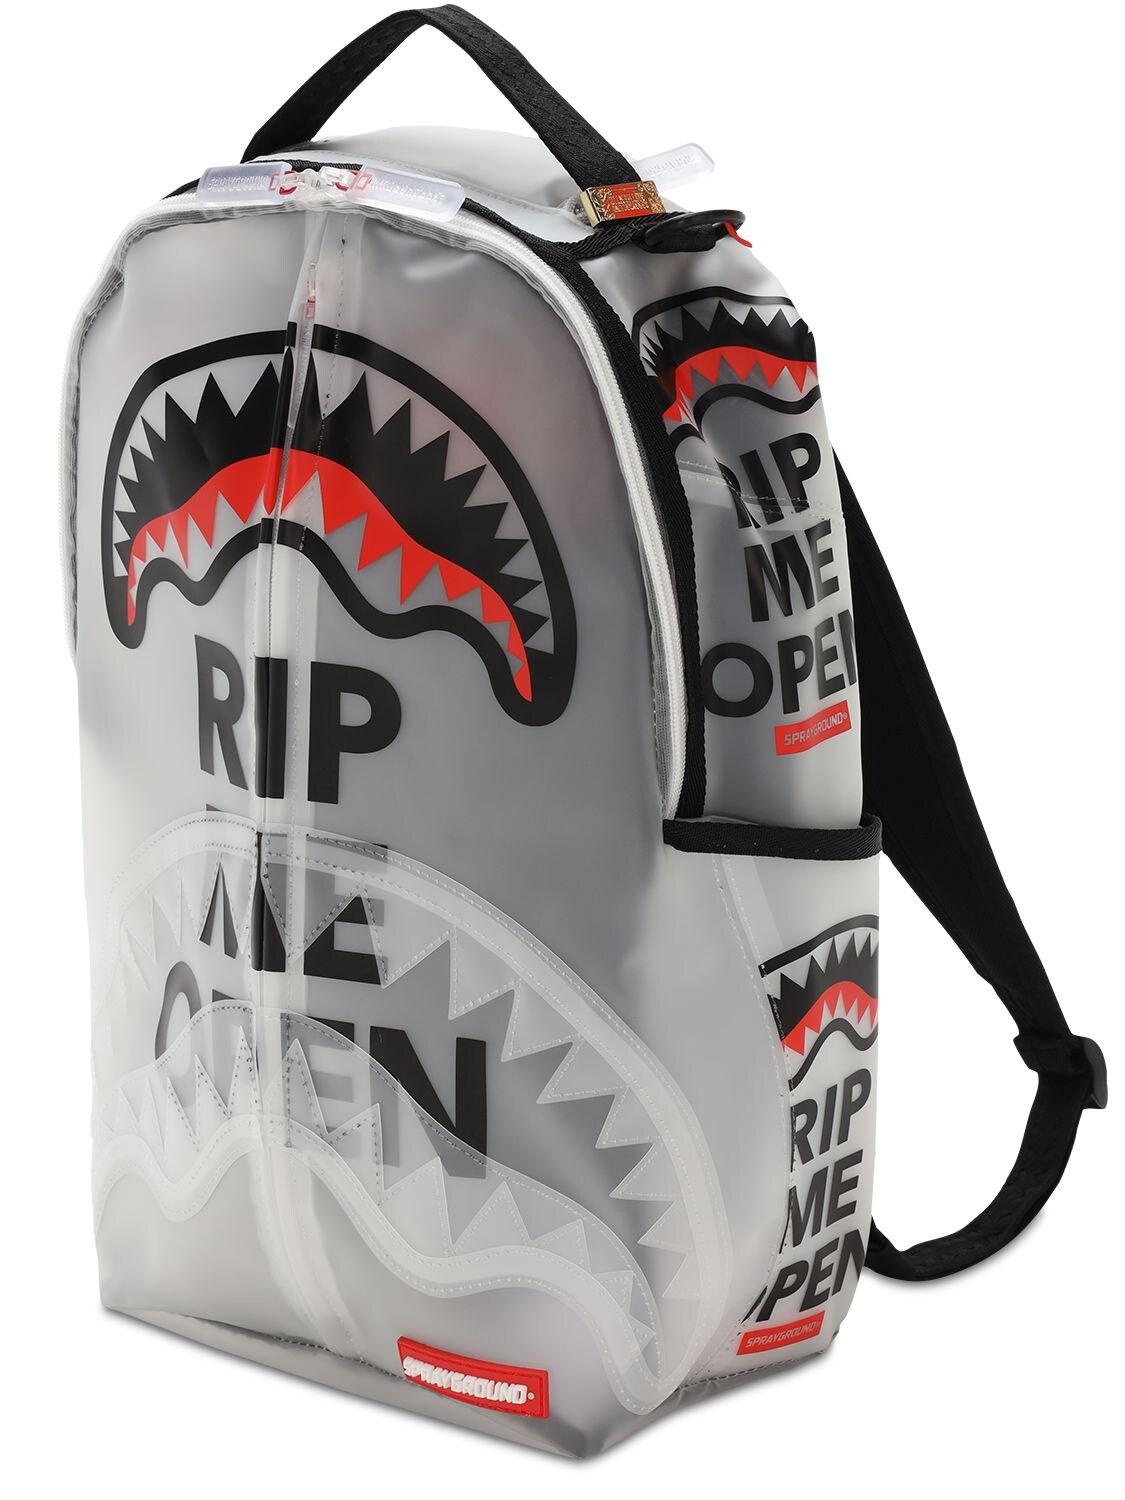 Sprayground Rip Me Open White Vinyl Shark Backpack Books Bag School Laptop  NEW